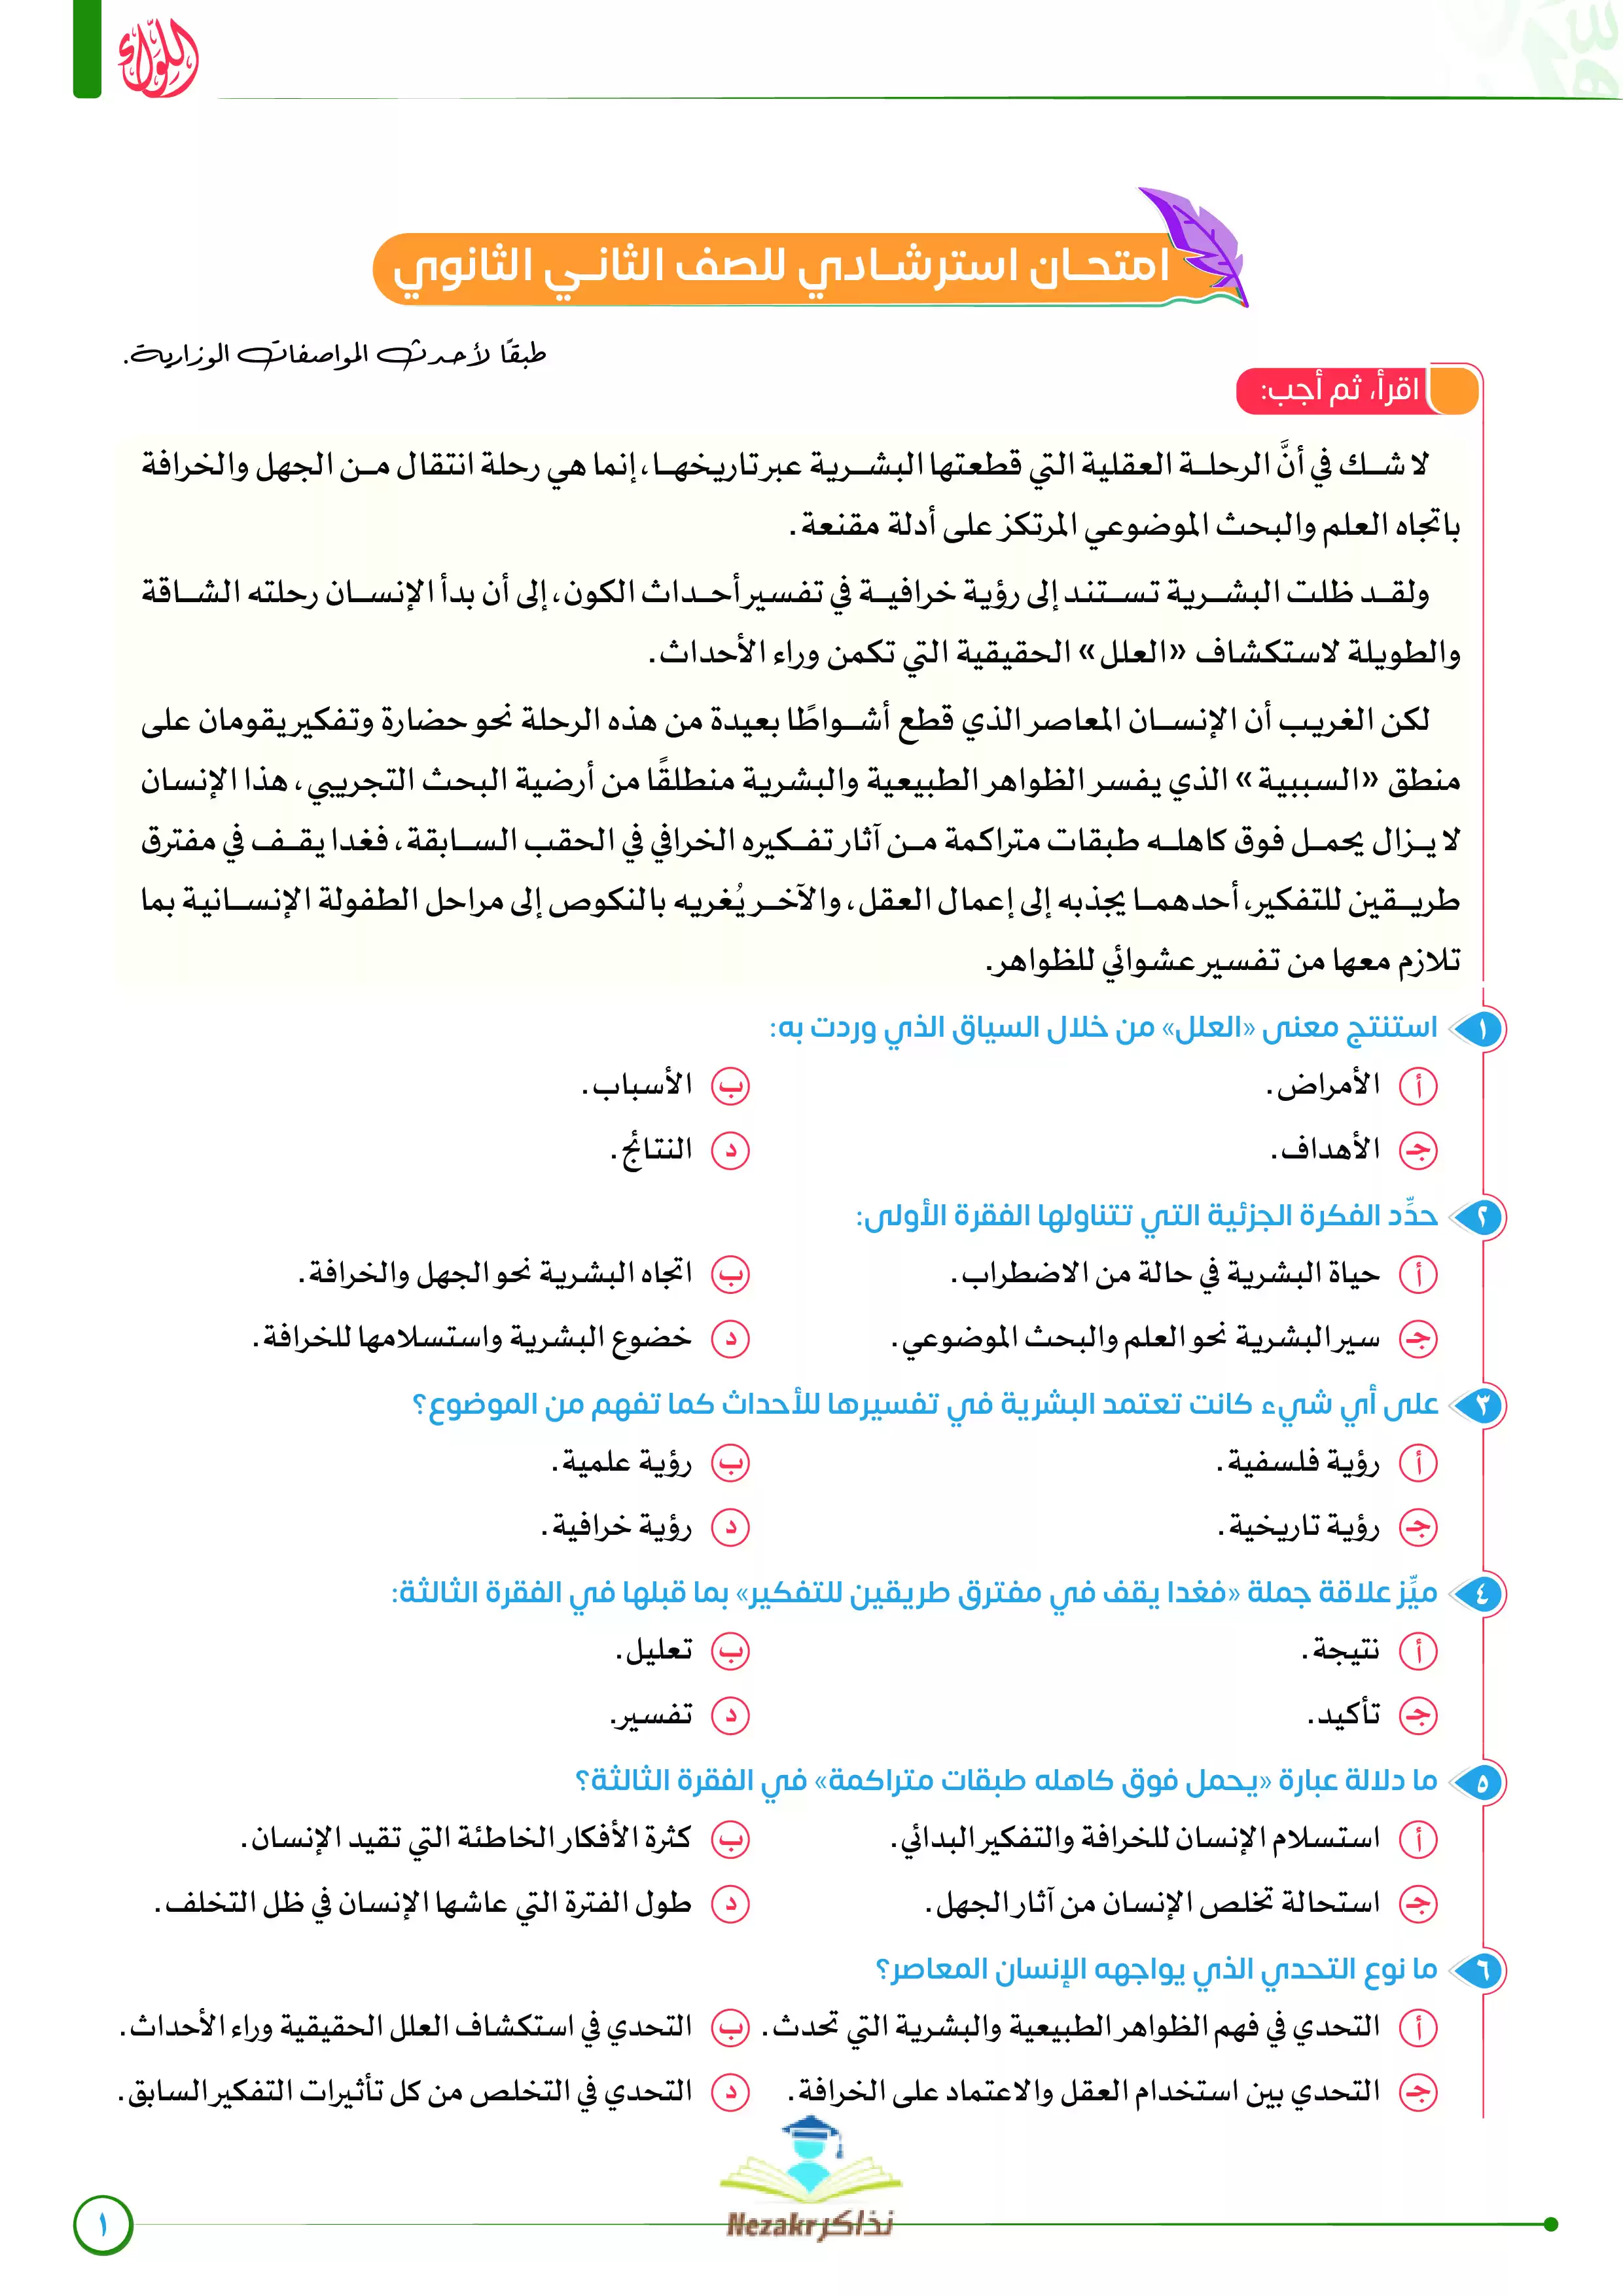 الامتحان الاسترشادي في اللغة العربية للصف الثاني الثانوي الفصل الدراسي الثاني (سلسلة اللواء - رضا الفاروق)